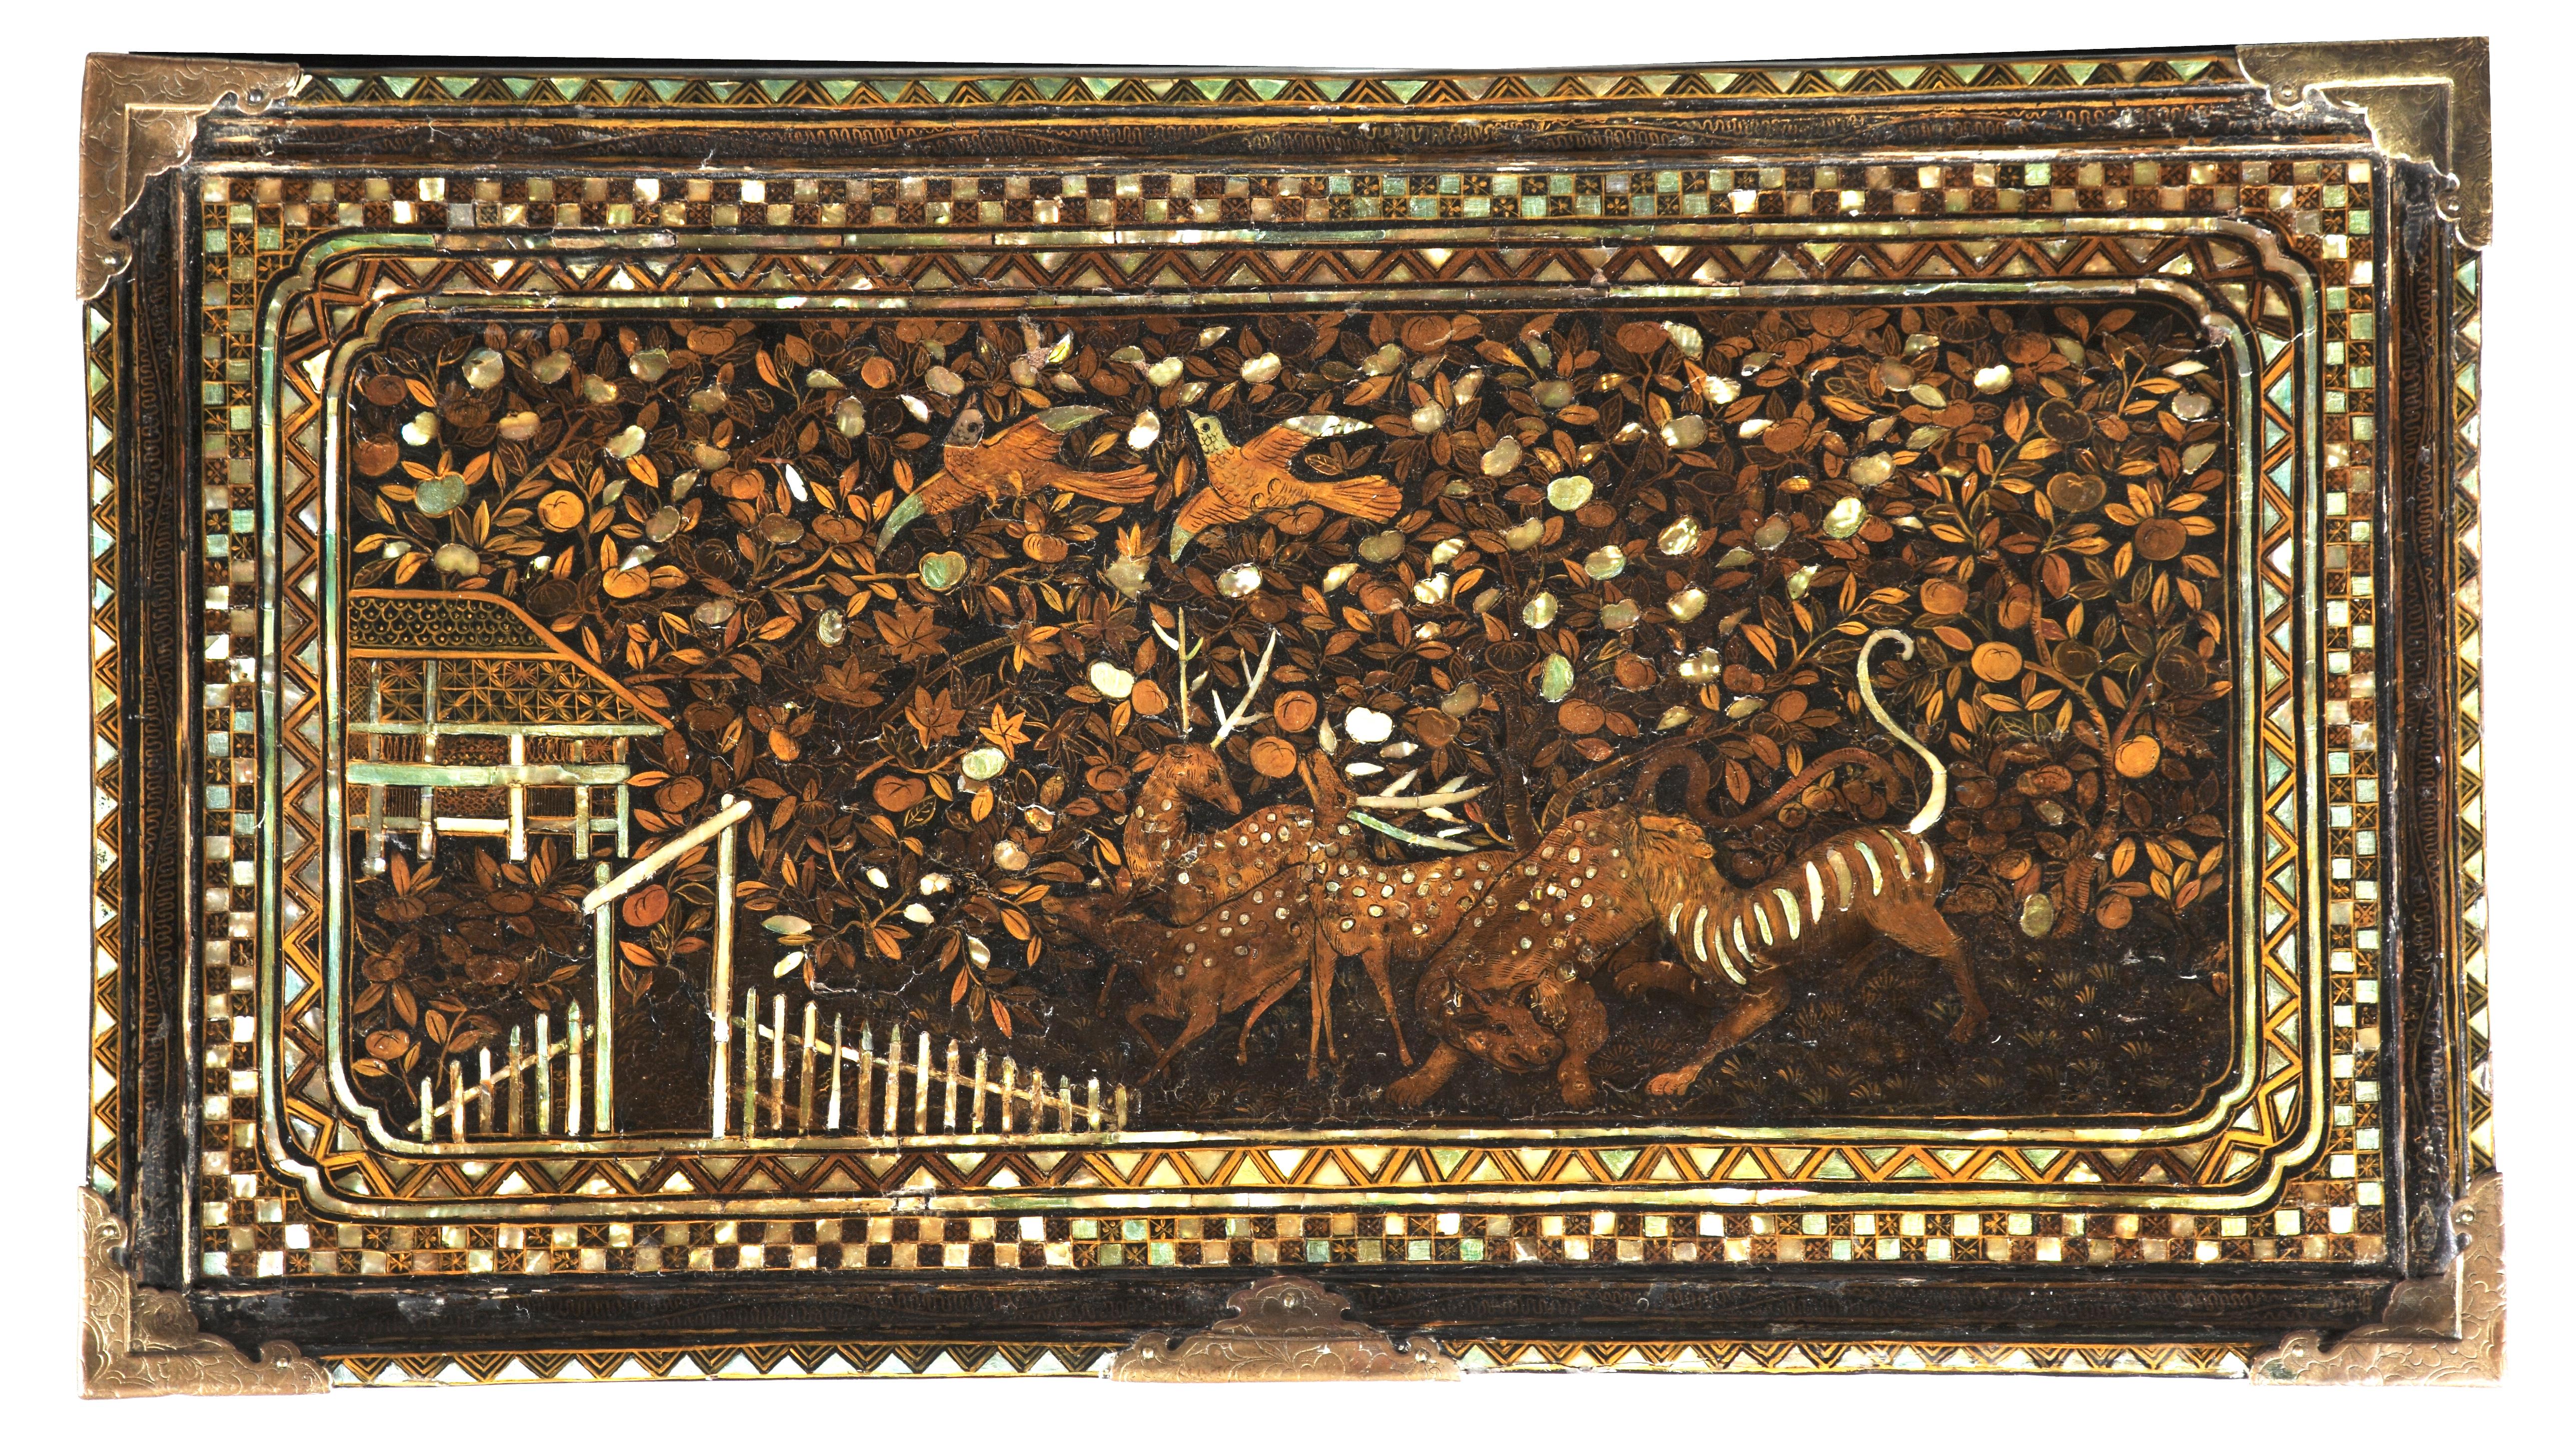 Armoire vargueno en laque Namban, de style colonial portugais.

Période Momoyama, vers 1600

 H. 43 x L. 64,5 x P. 36 cm

Bois, laqué noir et décoré d'or et d'incrustations de nacre, montures et poignées de transport en laiton, le front de chute